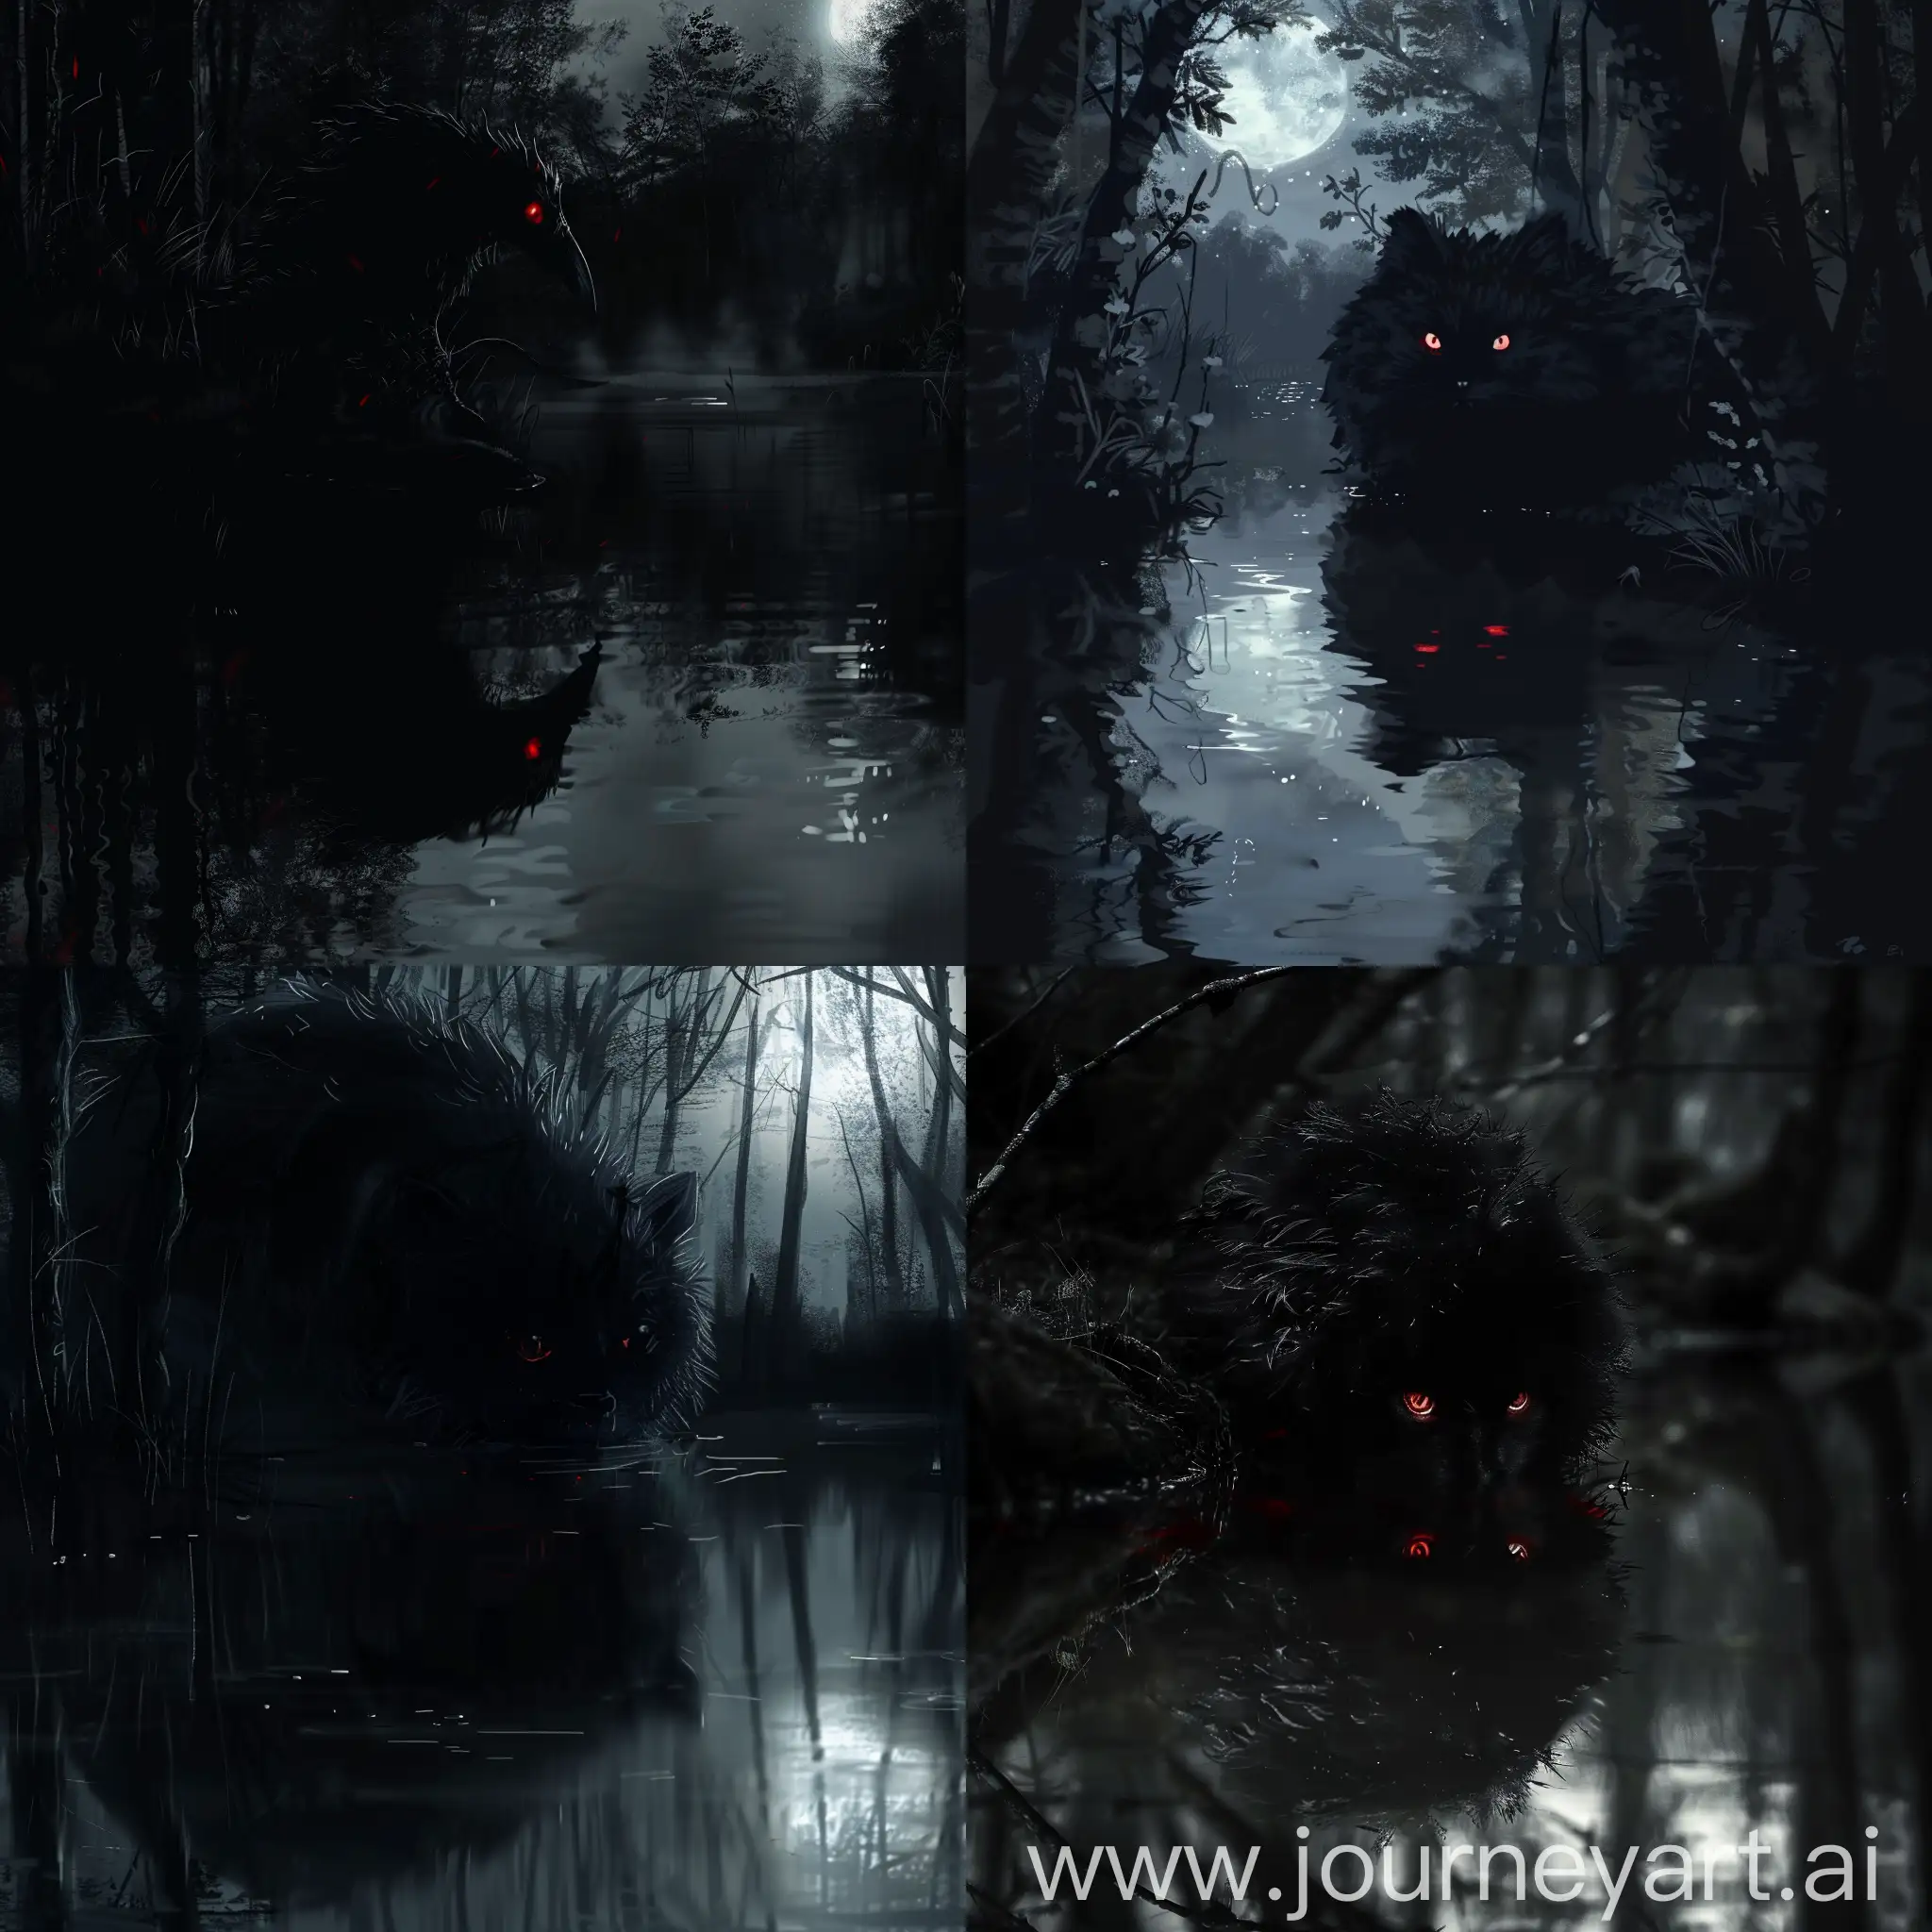 Зловещий кокатрис в тёмном лесу, полностью чёрный. Лишь его глаза блистают кроваво-красным, отражаясь в залитой луной, словно молочной, реке.
